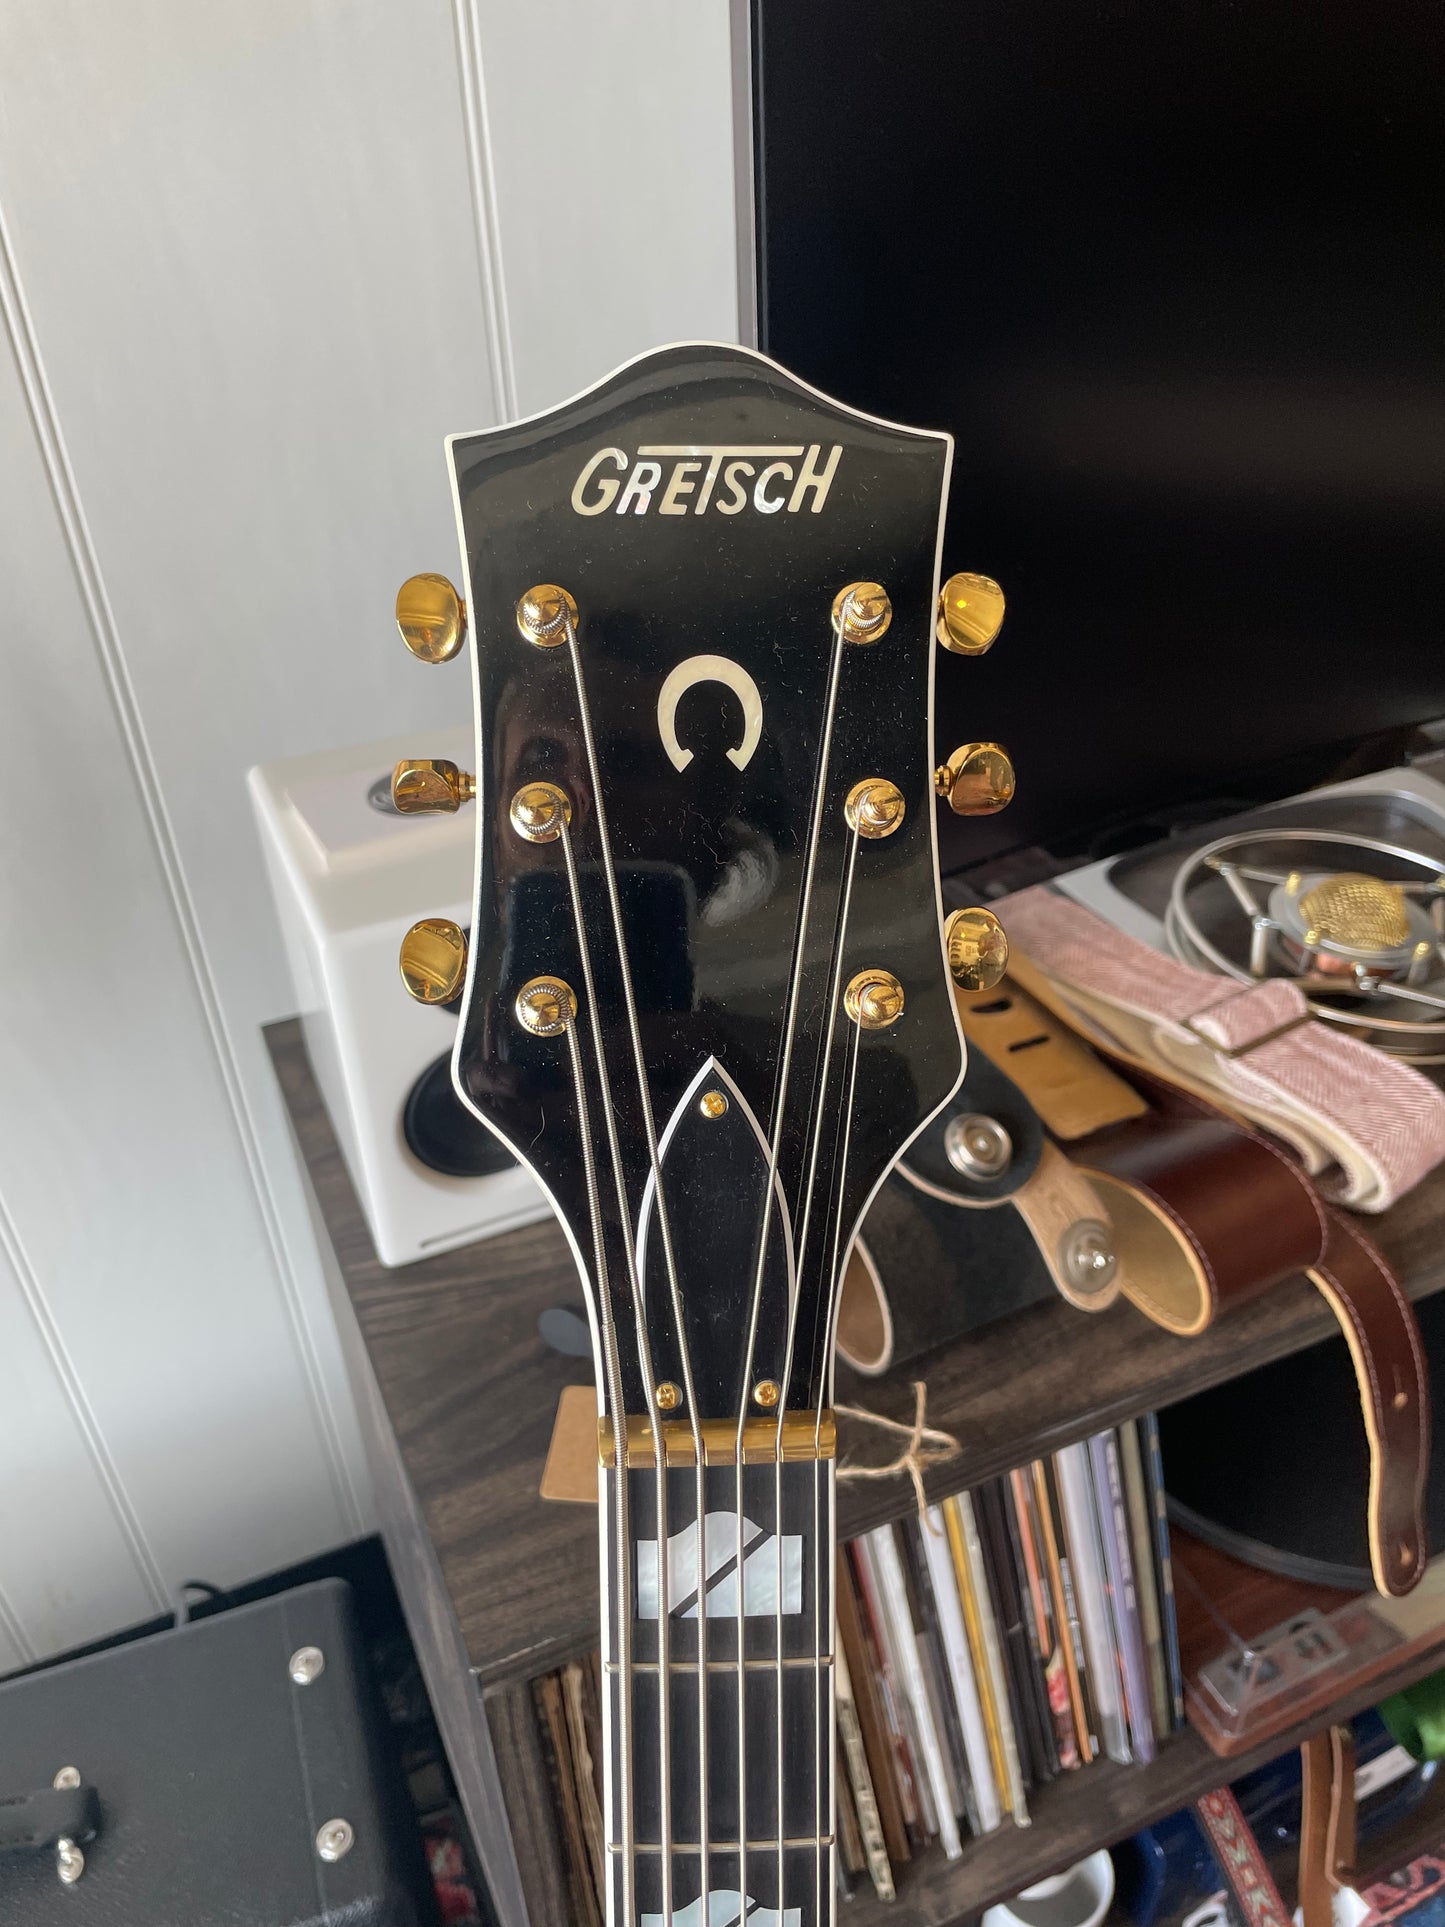 2018 Grestch Duane Eddy Six String Bass